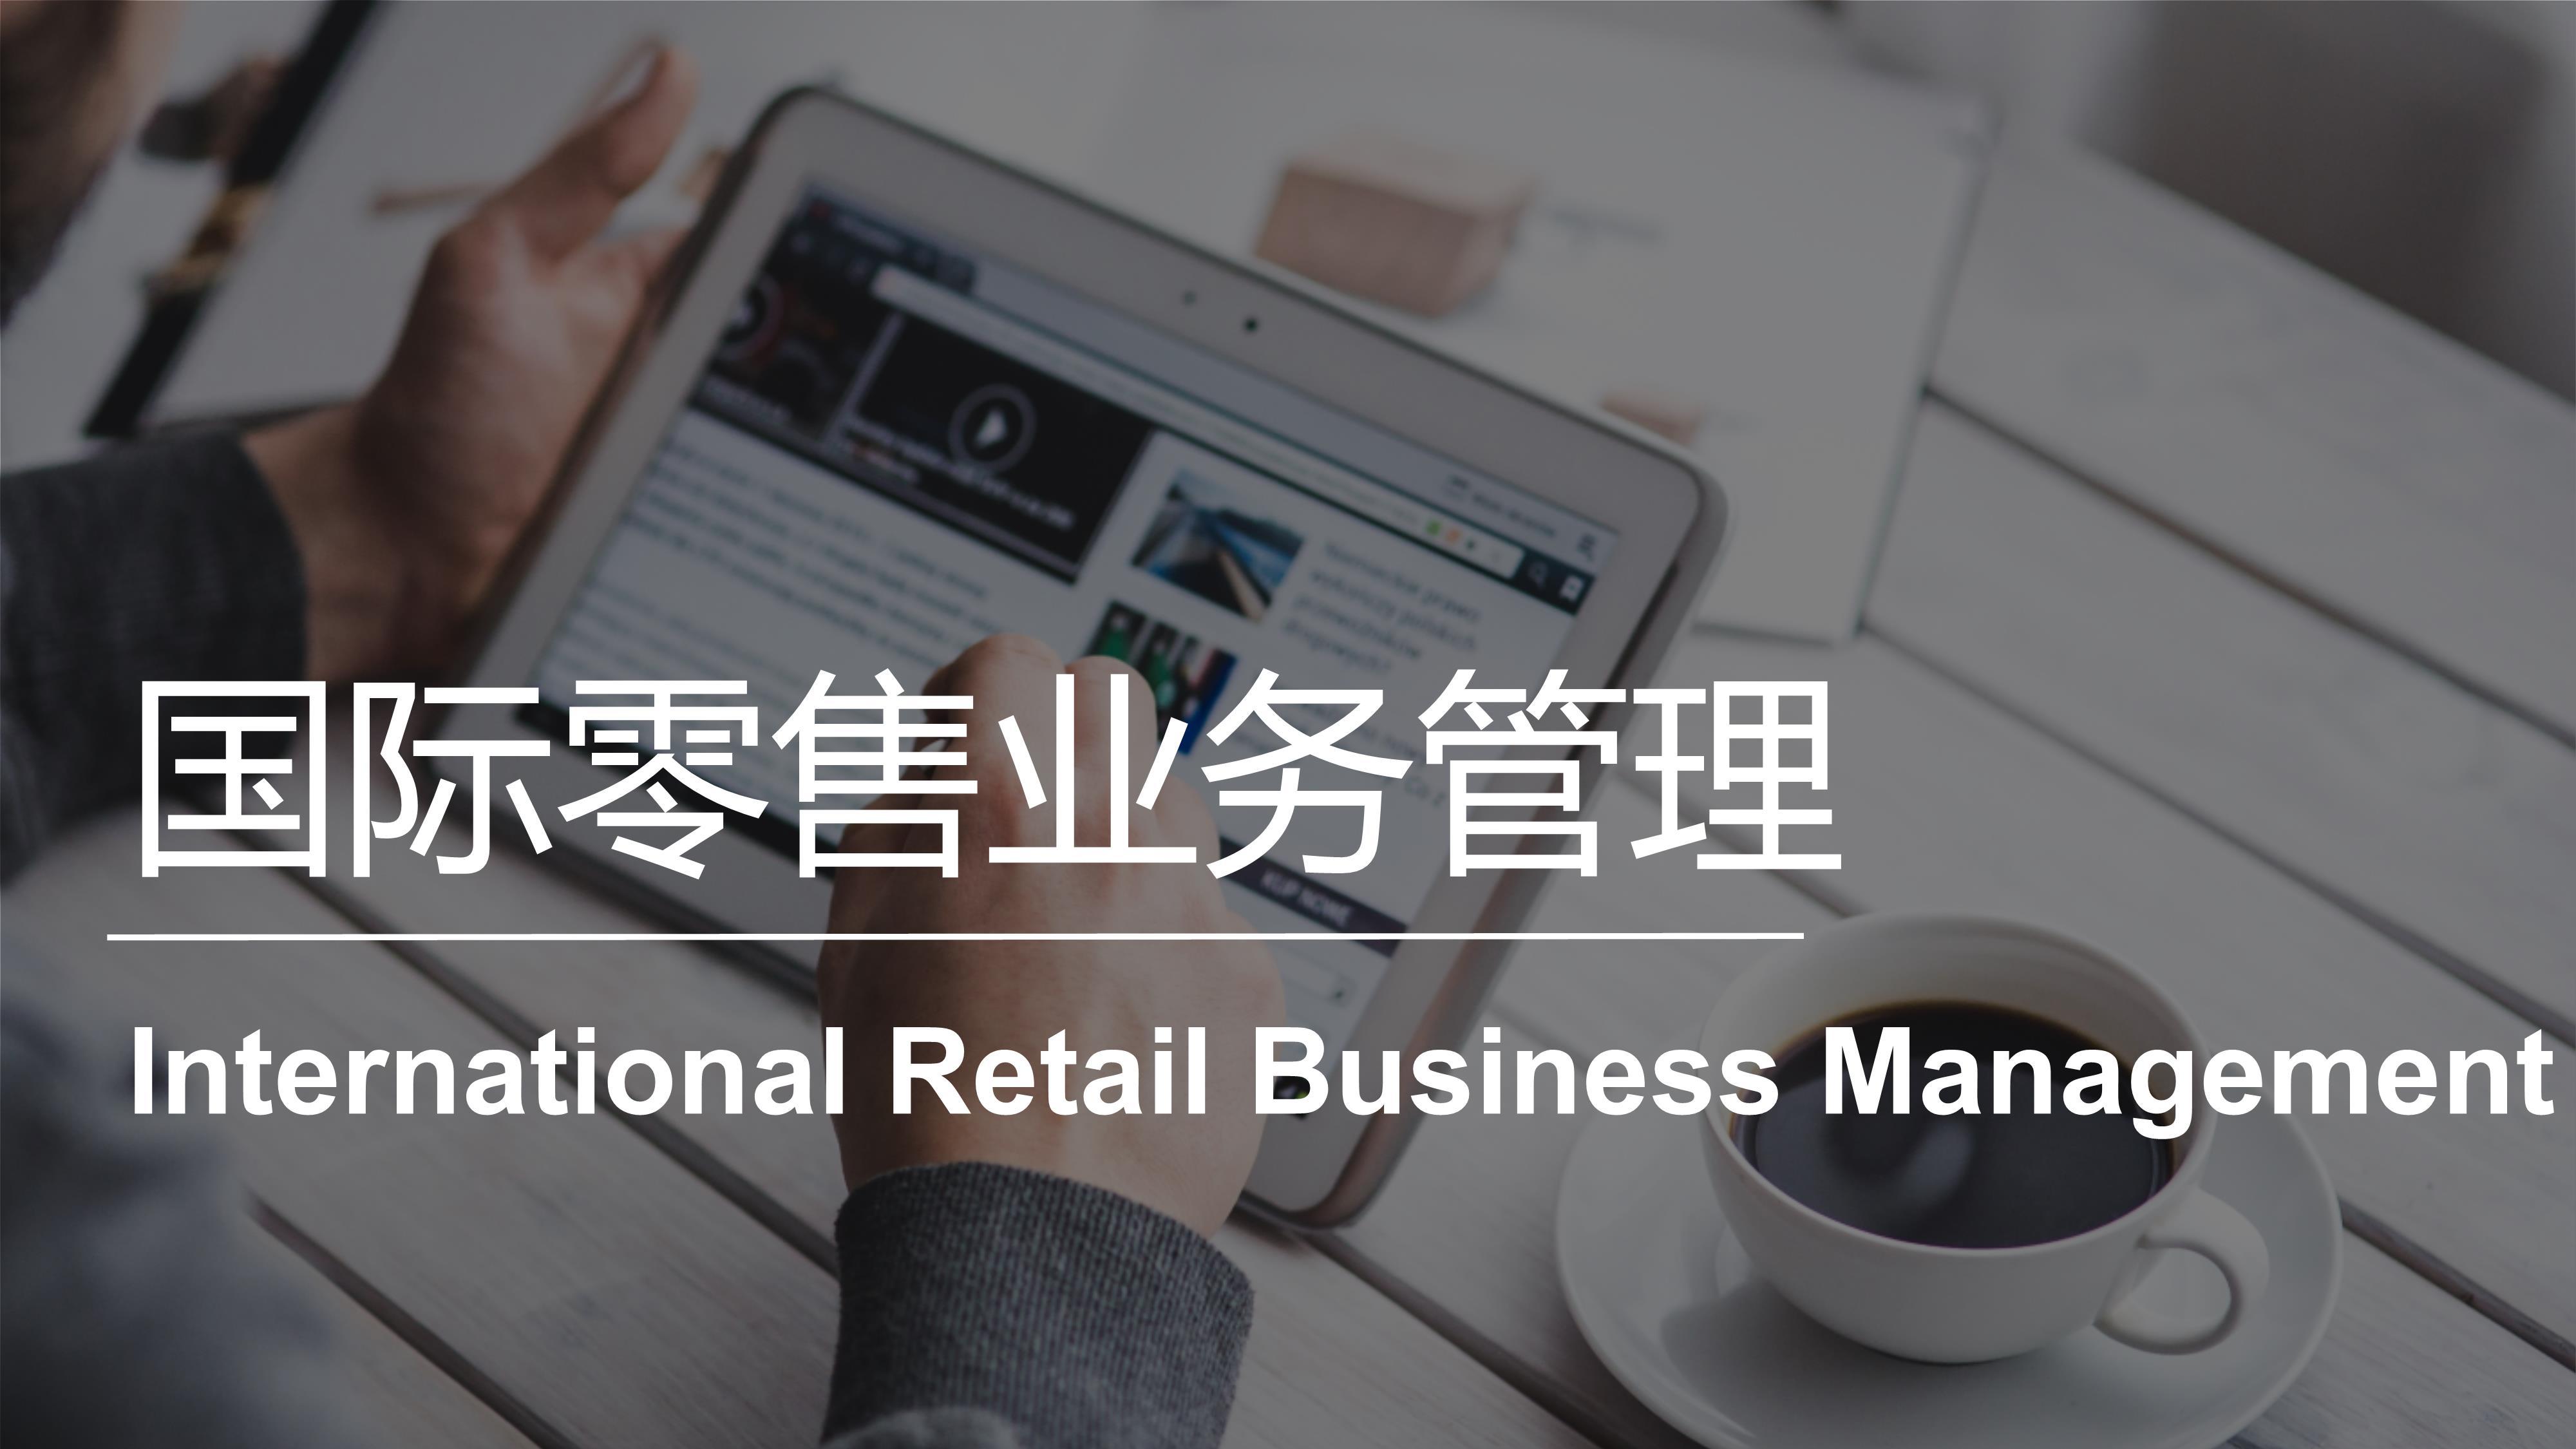 国际零售业务管理 | International Retail Business Management 20221101192631